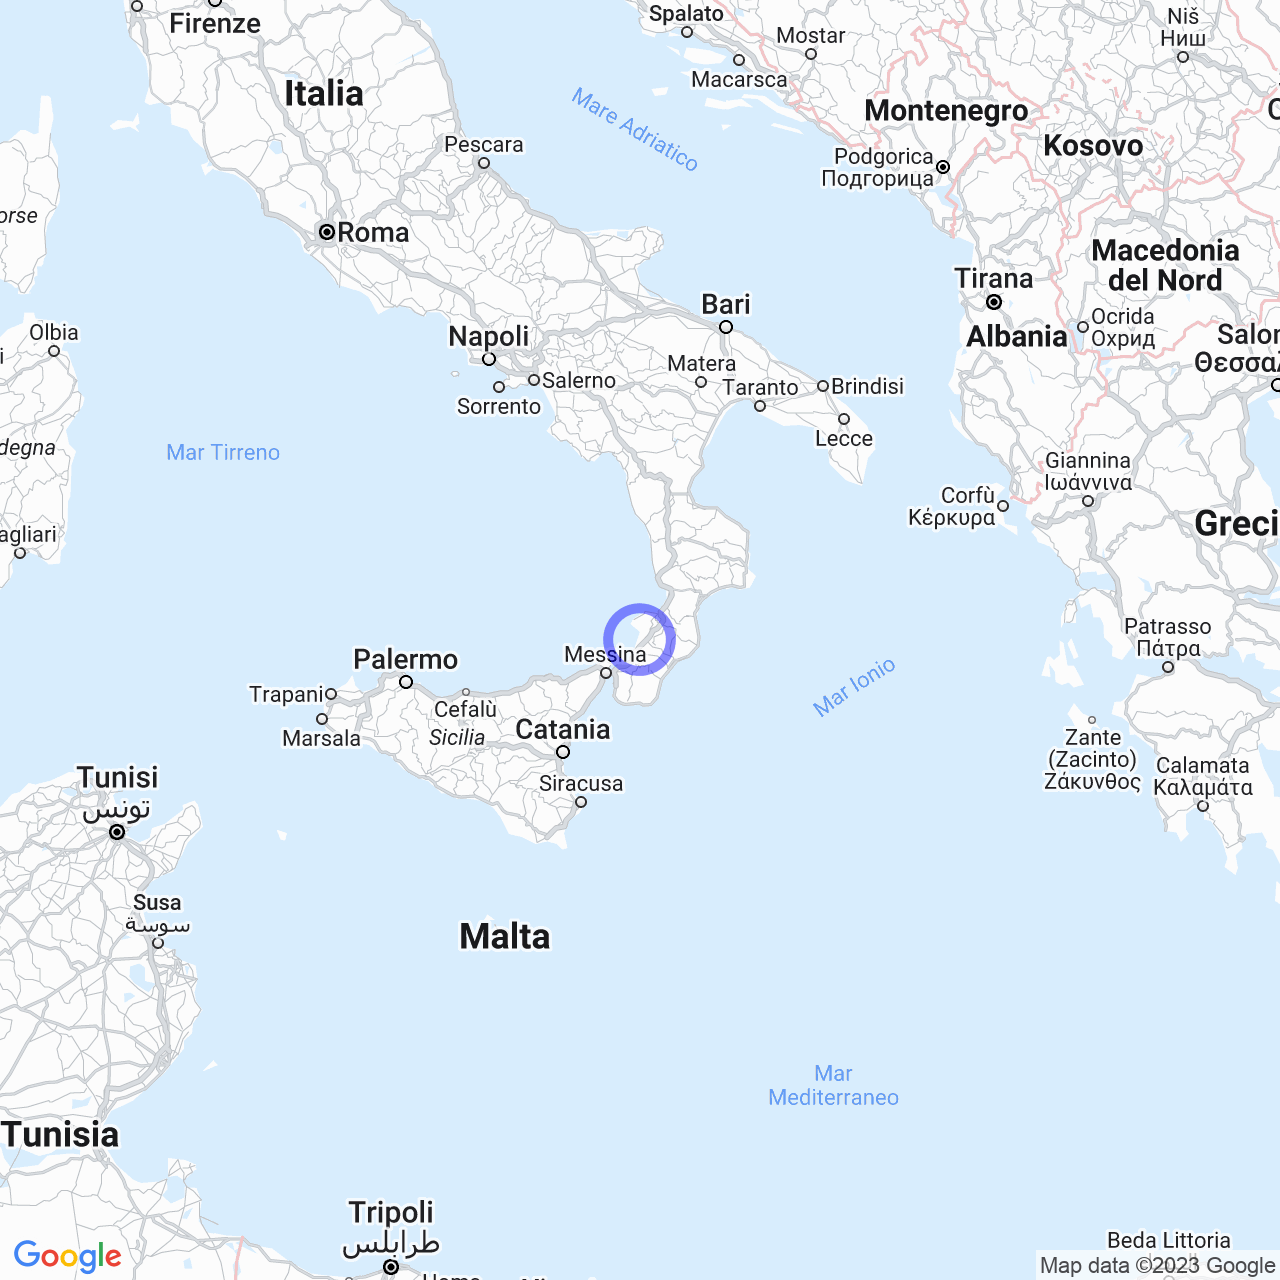 La Provincia di Reggio Calabria: Storia, Geografia e Comuni